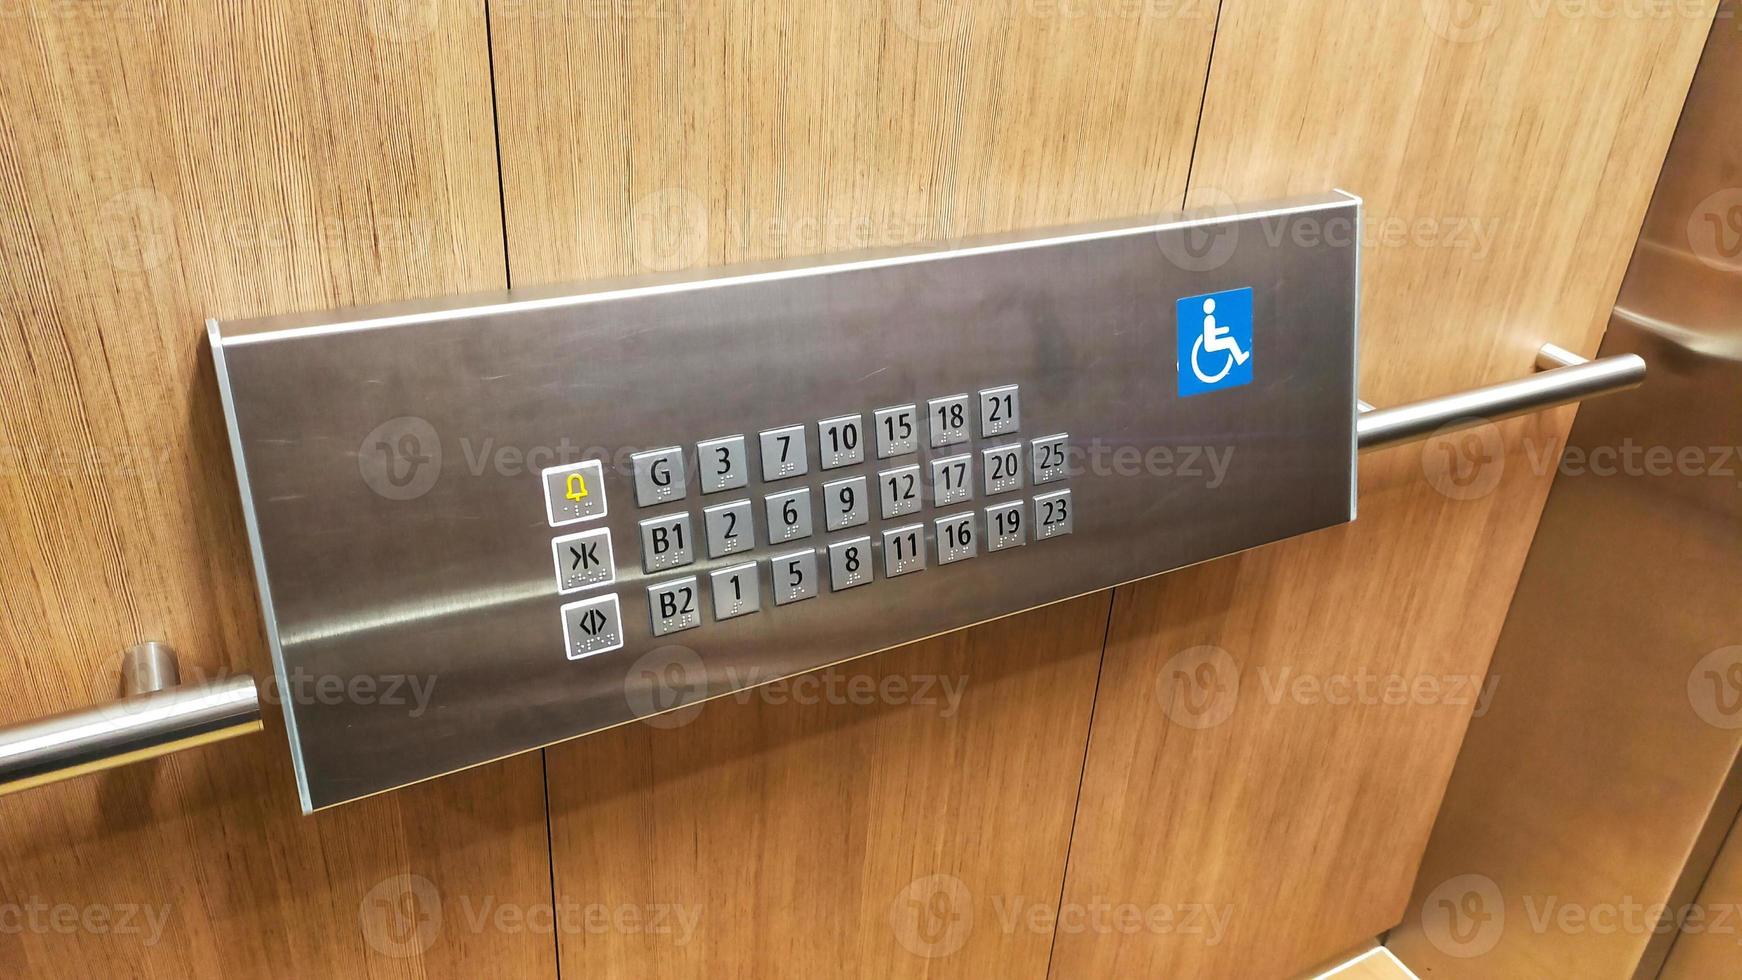 de gehandicapt lift knop of paneel met braille code van de lift. foto